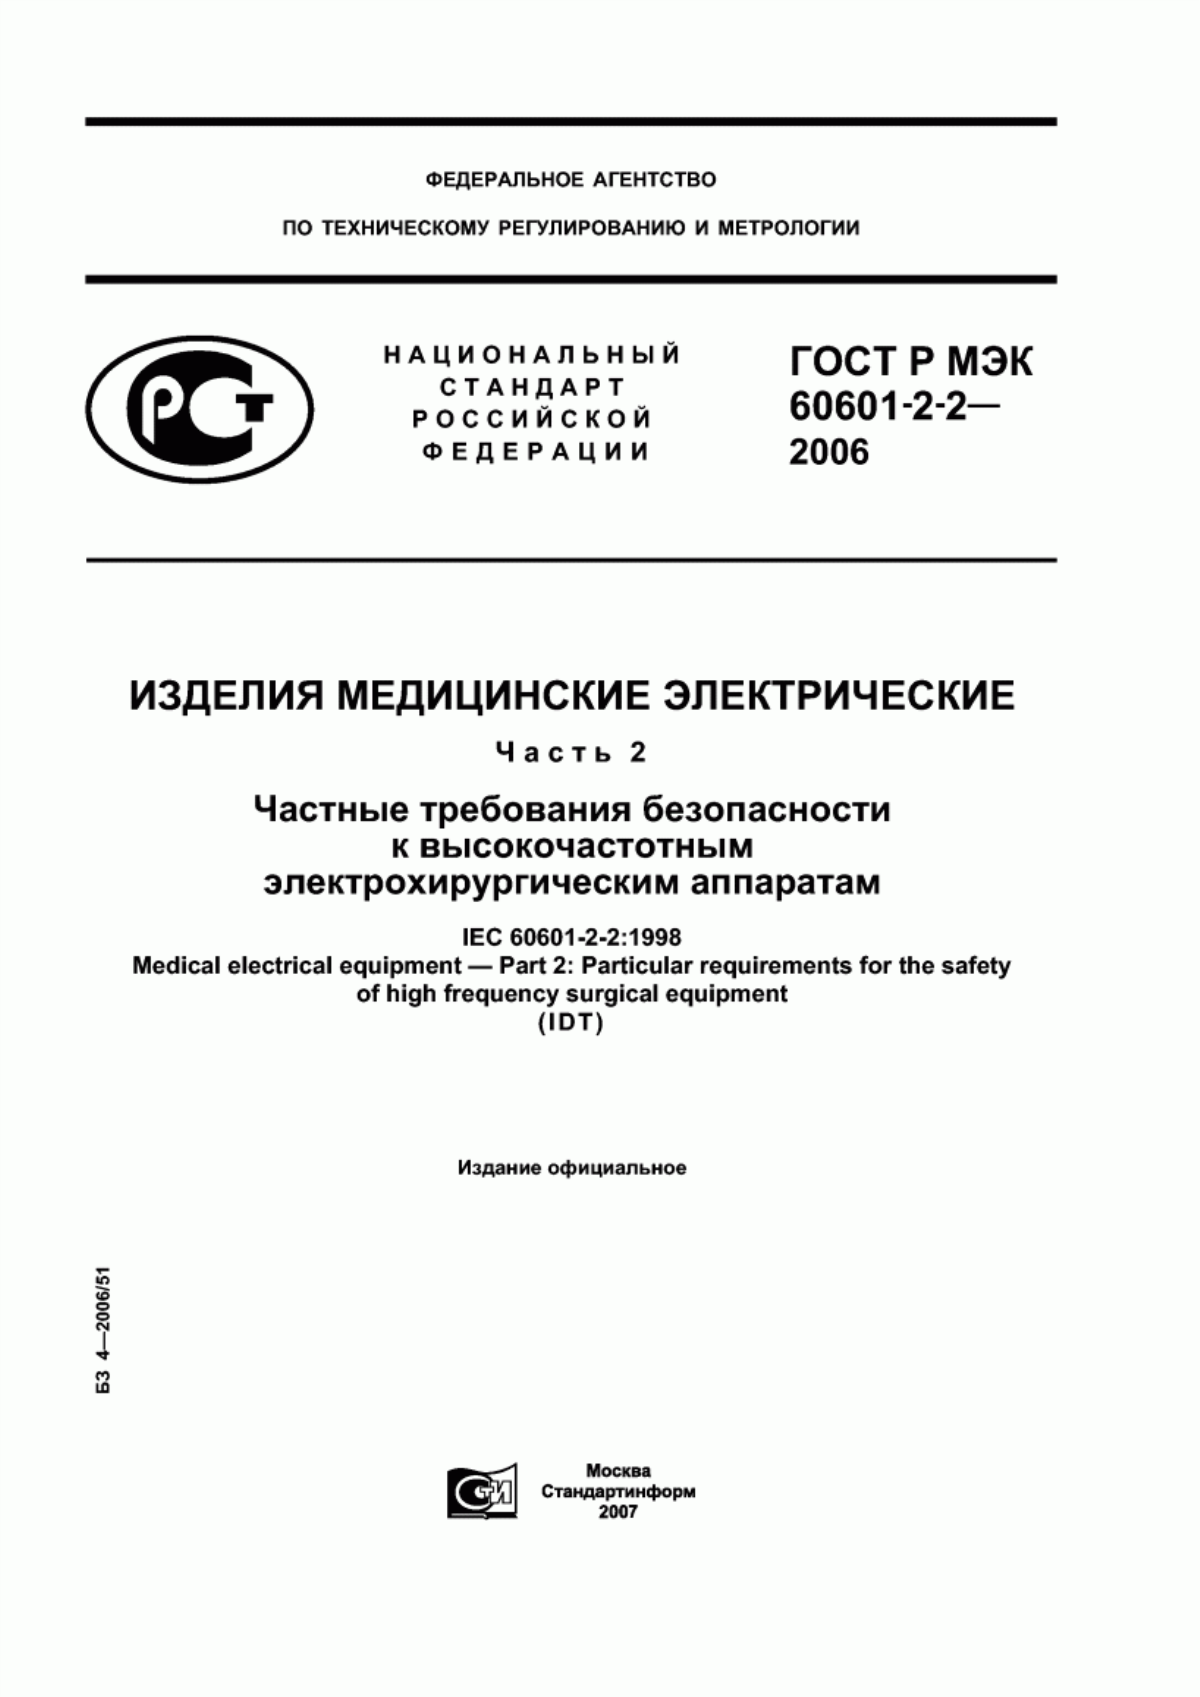 ГОСТ Р МЭК 60601-2-2-2006 Изделия медицинские электрические. Часть 2. Частные требования безопасности к высокочастотным электрохирургическим аппаратам